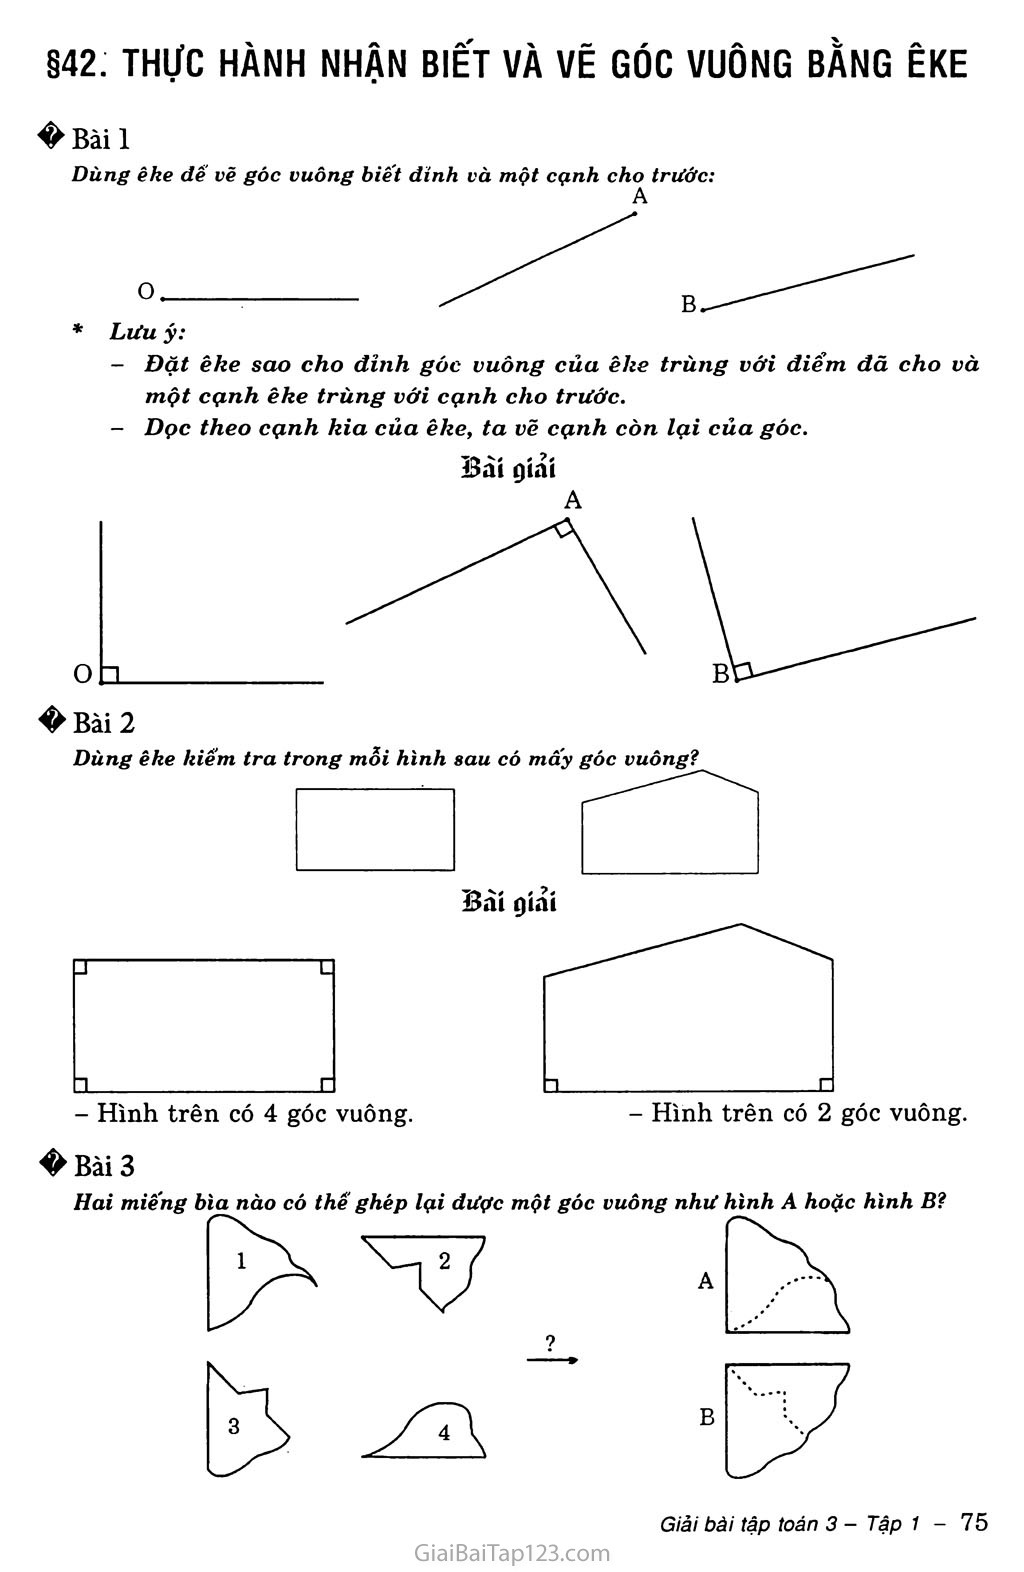 Eke là gì và cách sử dụng để vẽ góc vuông?
